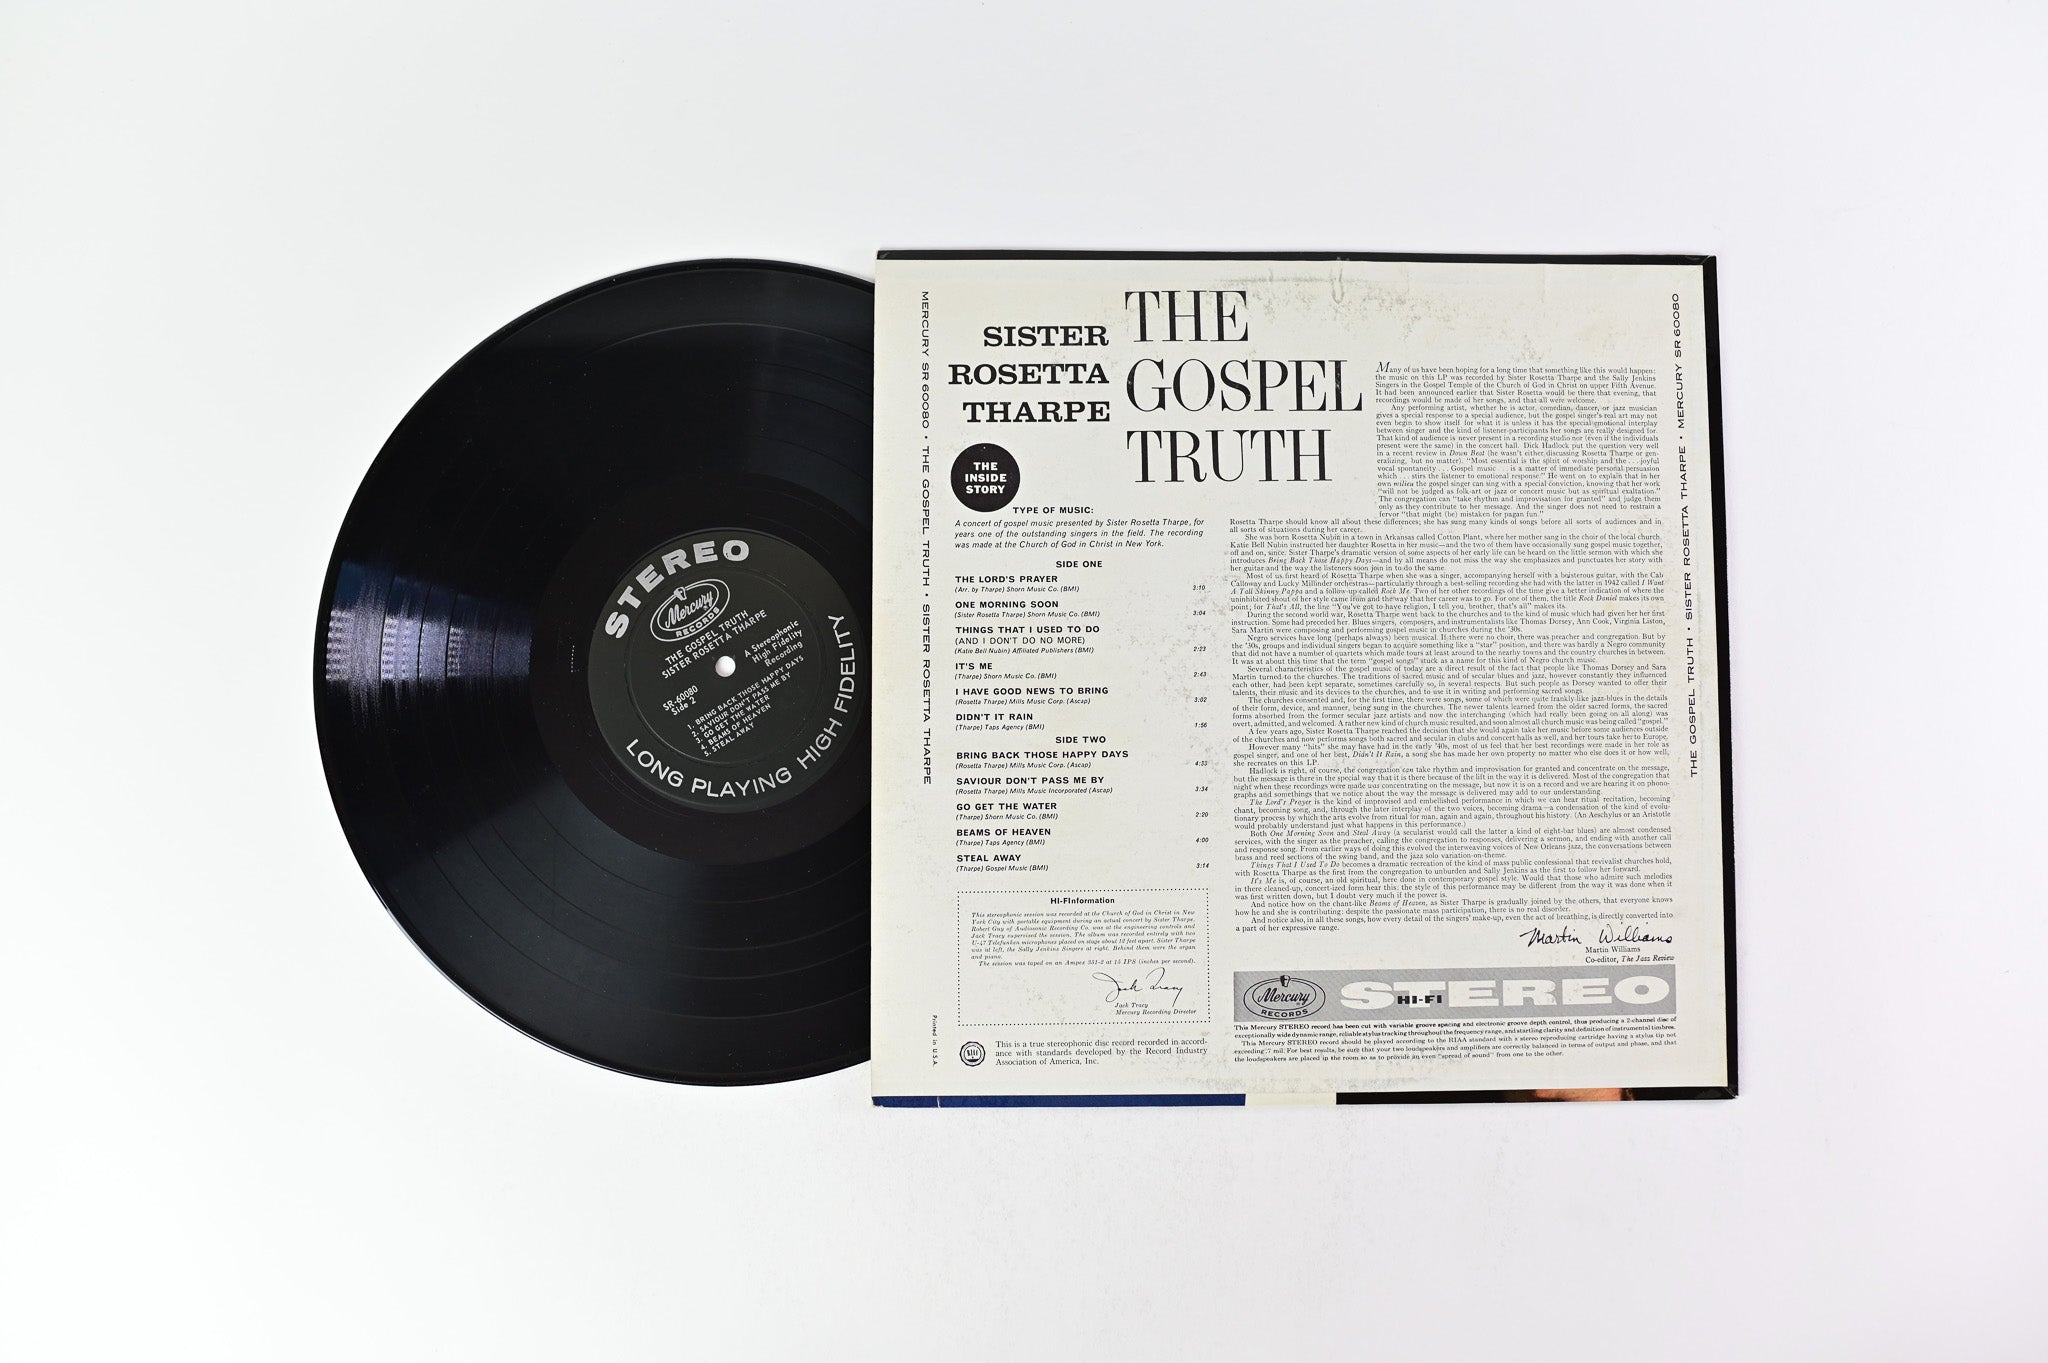 Sister Rosetta Tharpe - The Gospel Truth on Mercury Stereo